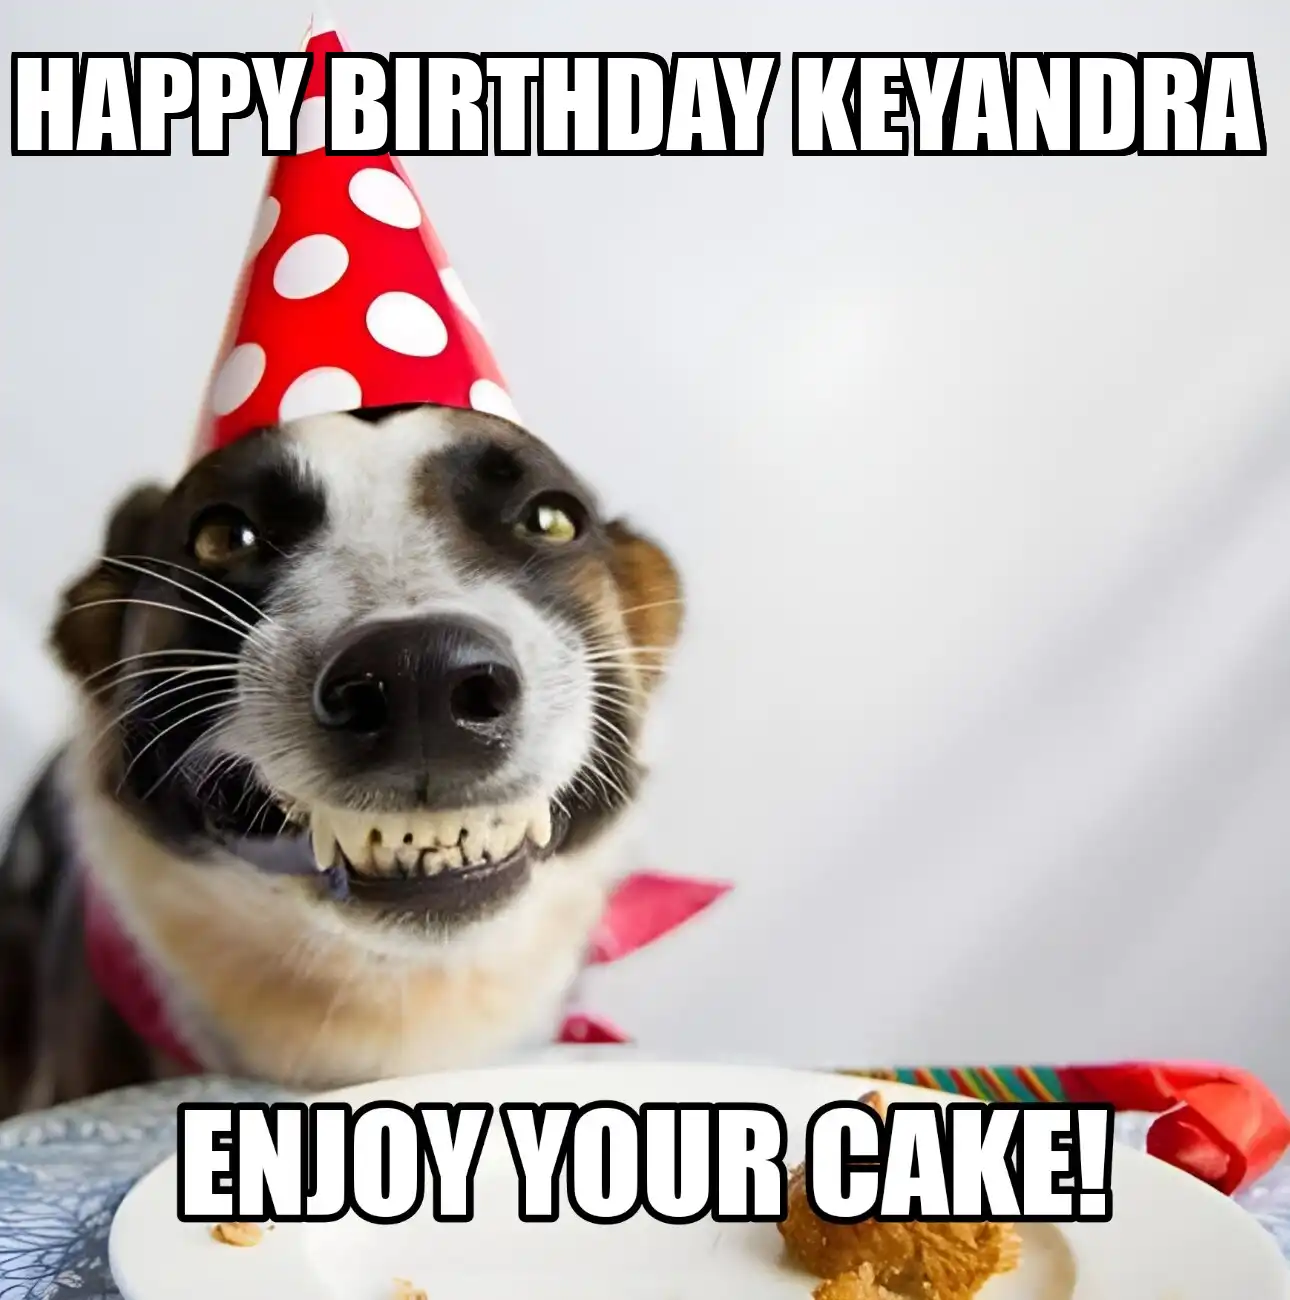 Happy Birthday Keyandra Enjoy Your Cake Dog Meme